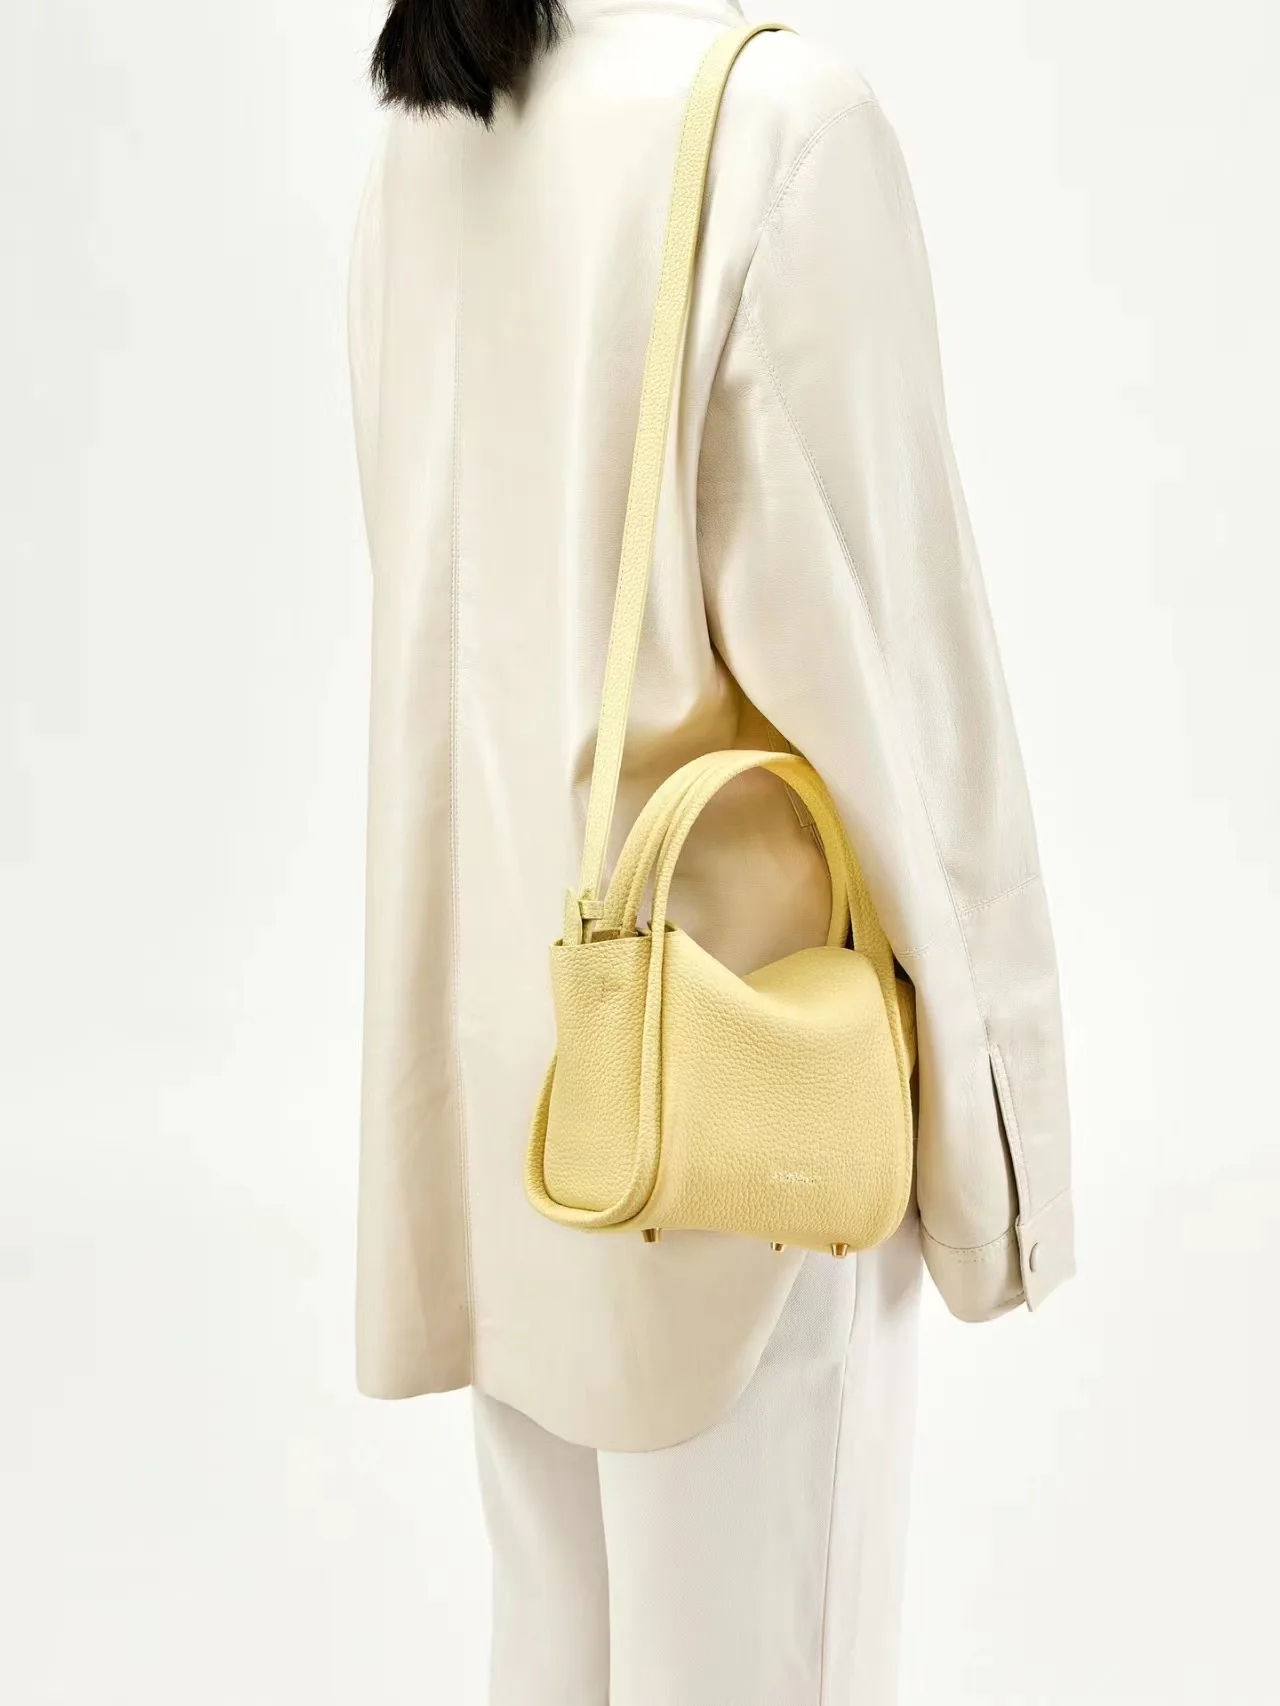 Nowa, podręczna torebka damska z ukośnymi ukośnymi seria kolorowa, nowa, luksusowa, nowa, projektantka